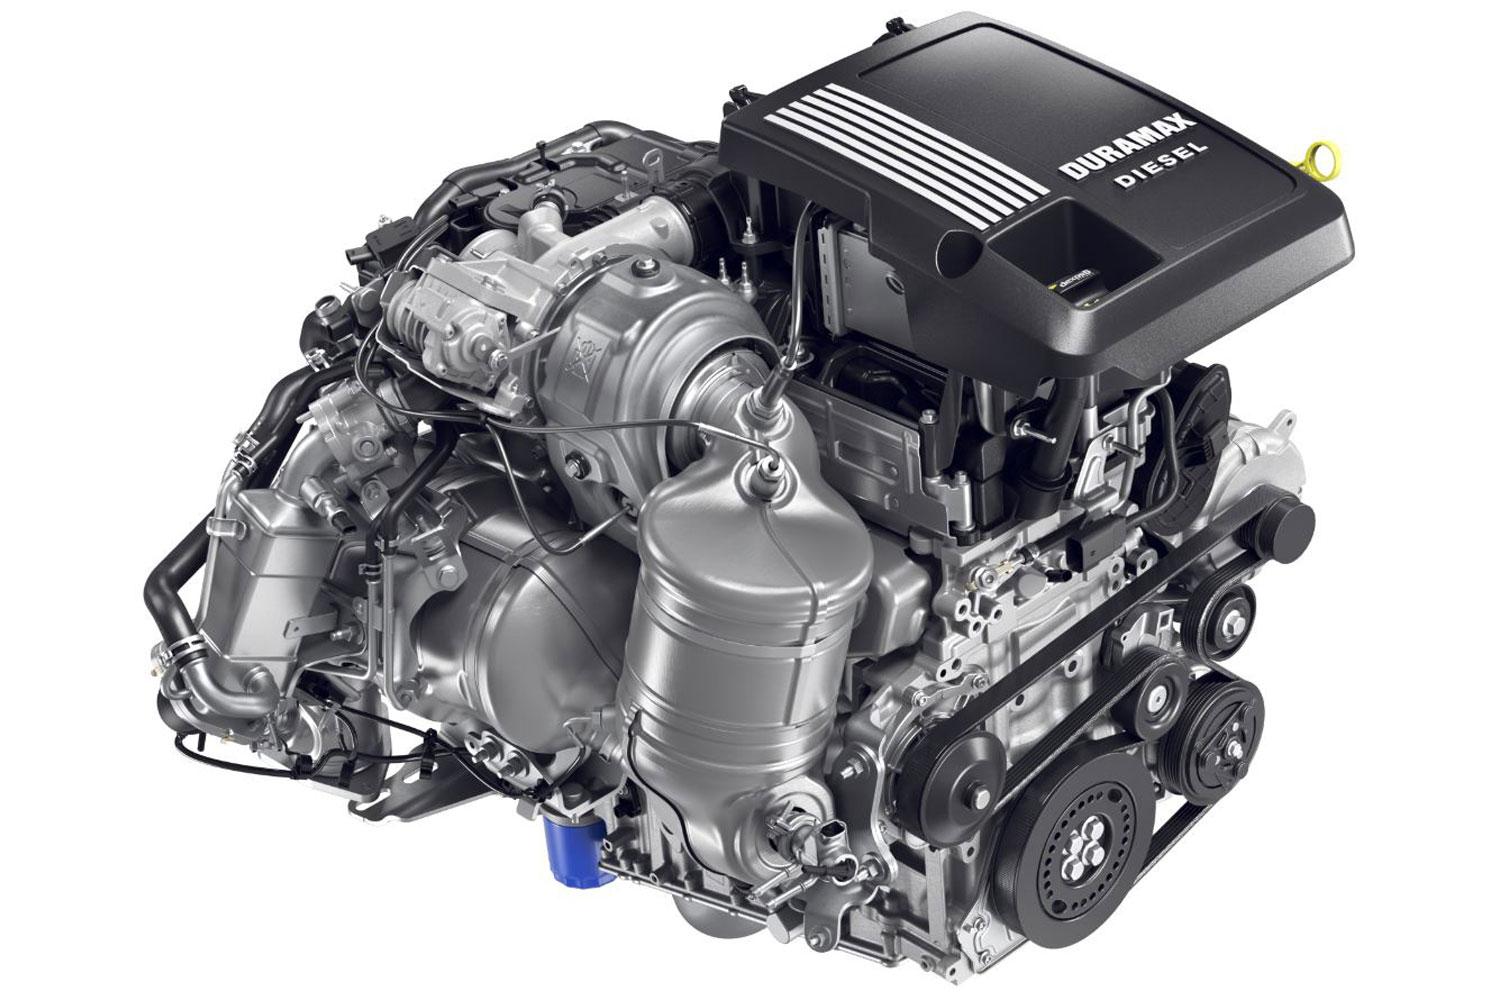 New Duramax Diesel 3.0L LZ0 Engine Gets More Power, Torque